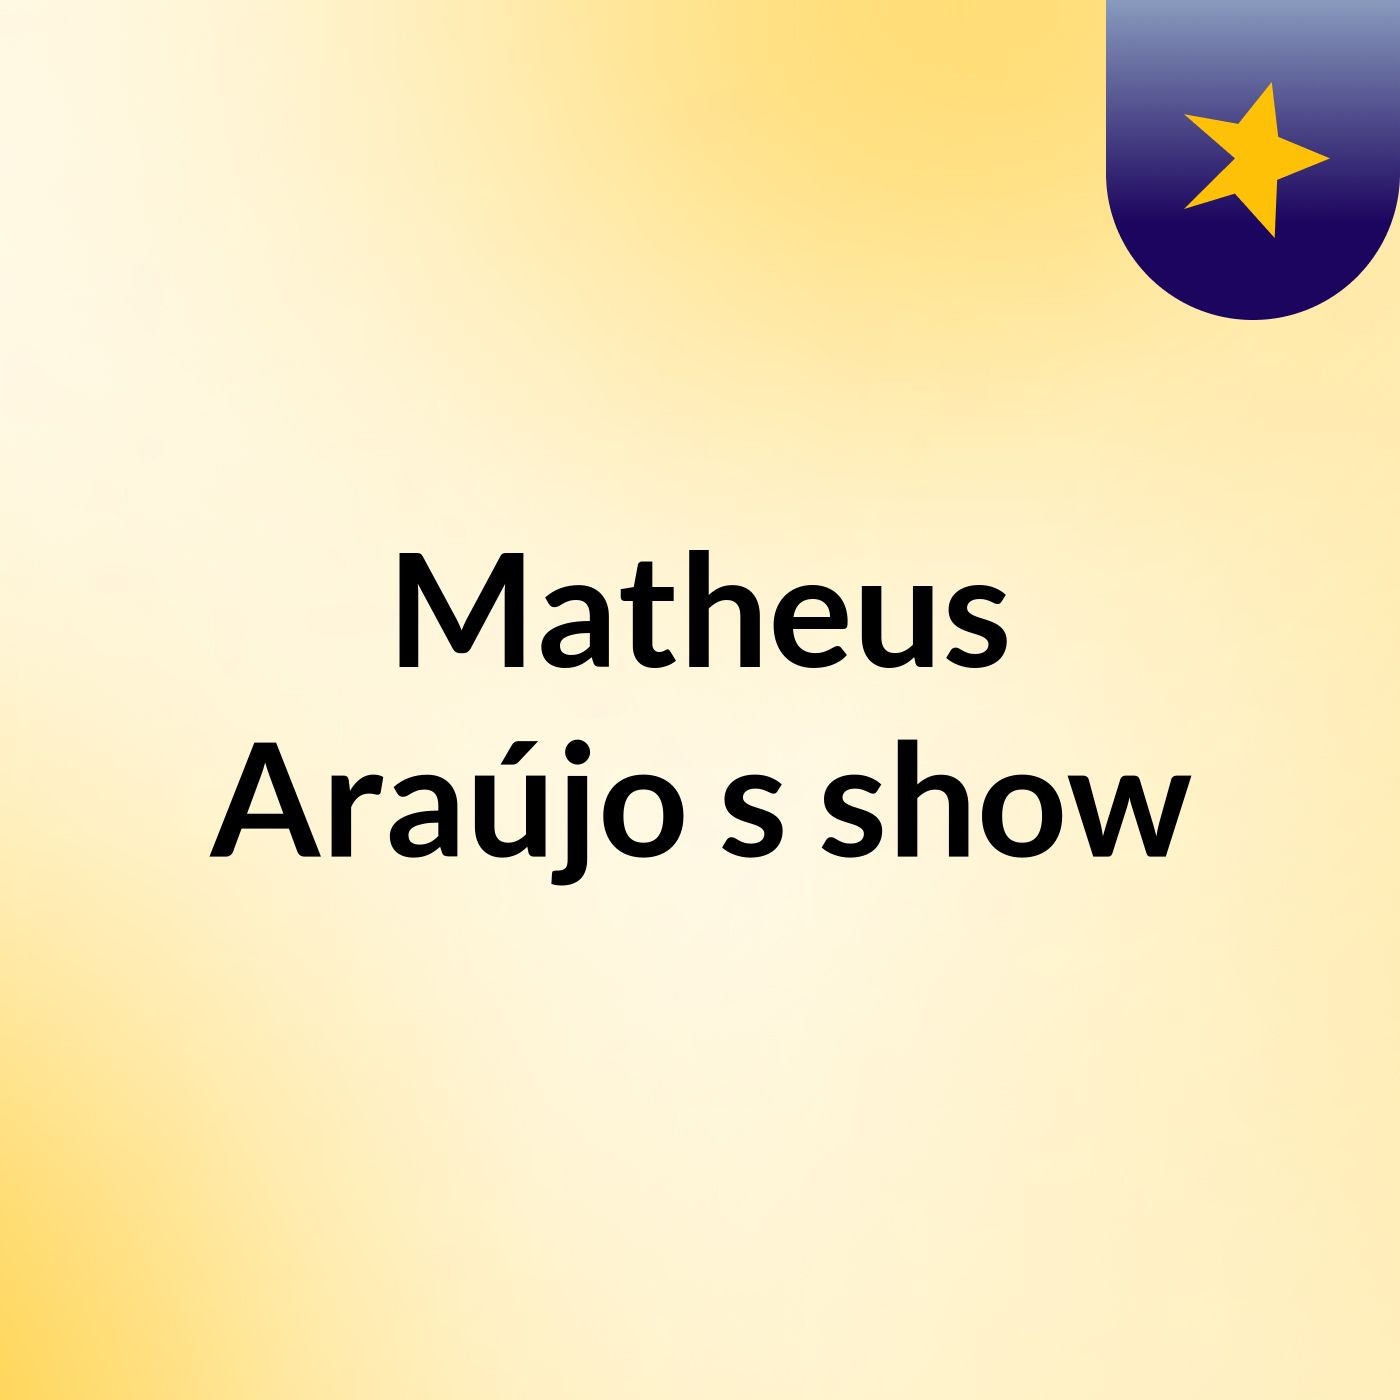 Matheus Araújo's show